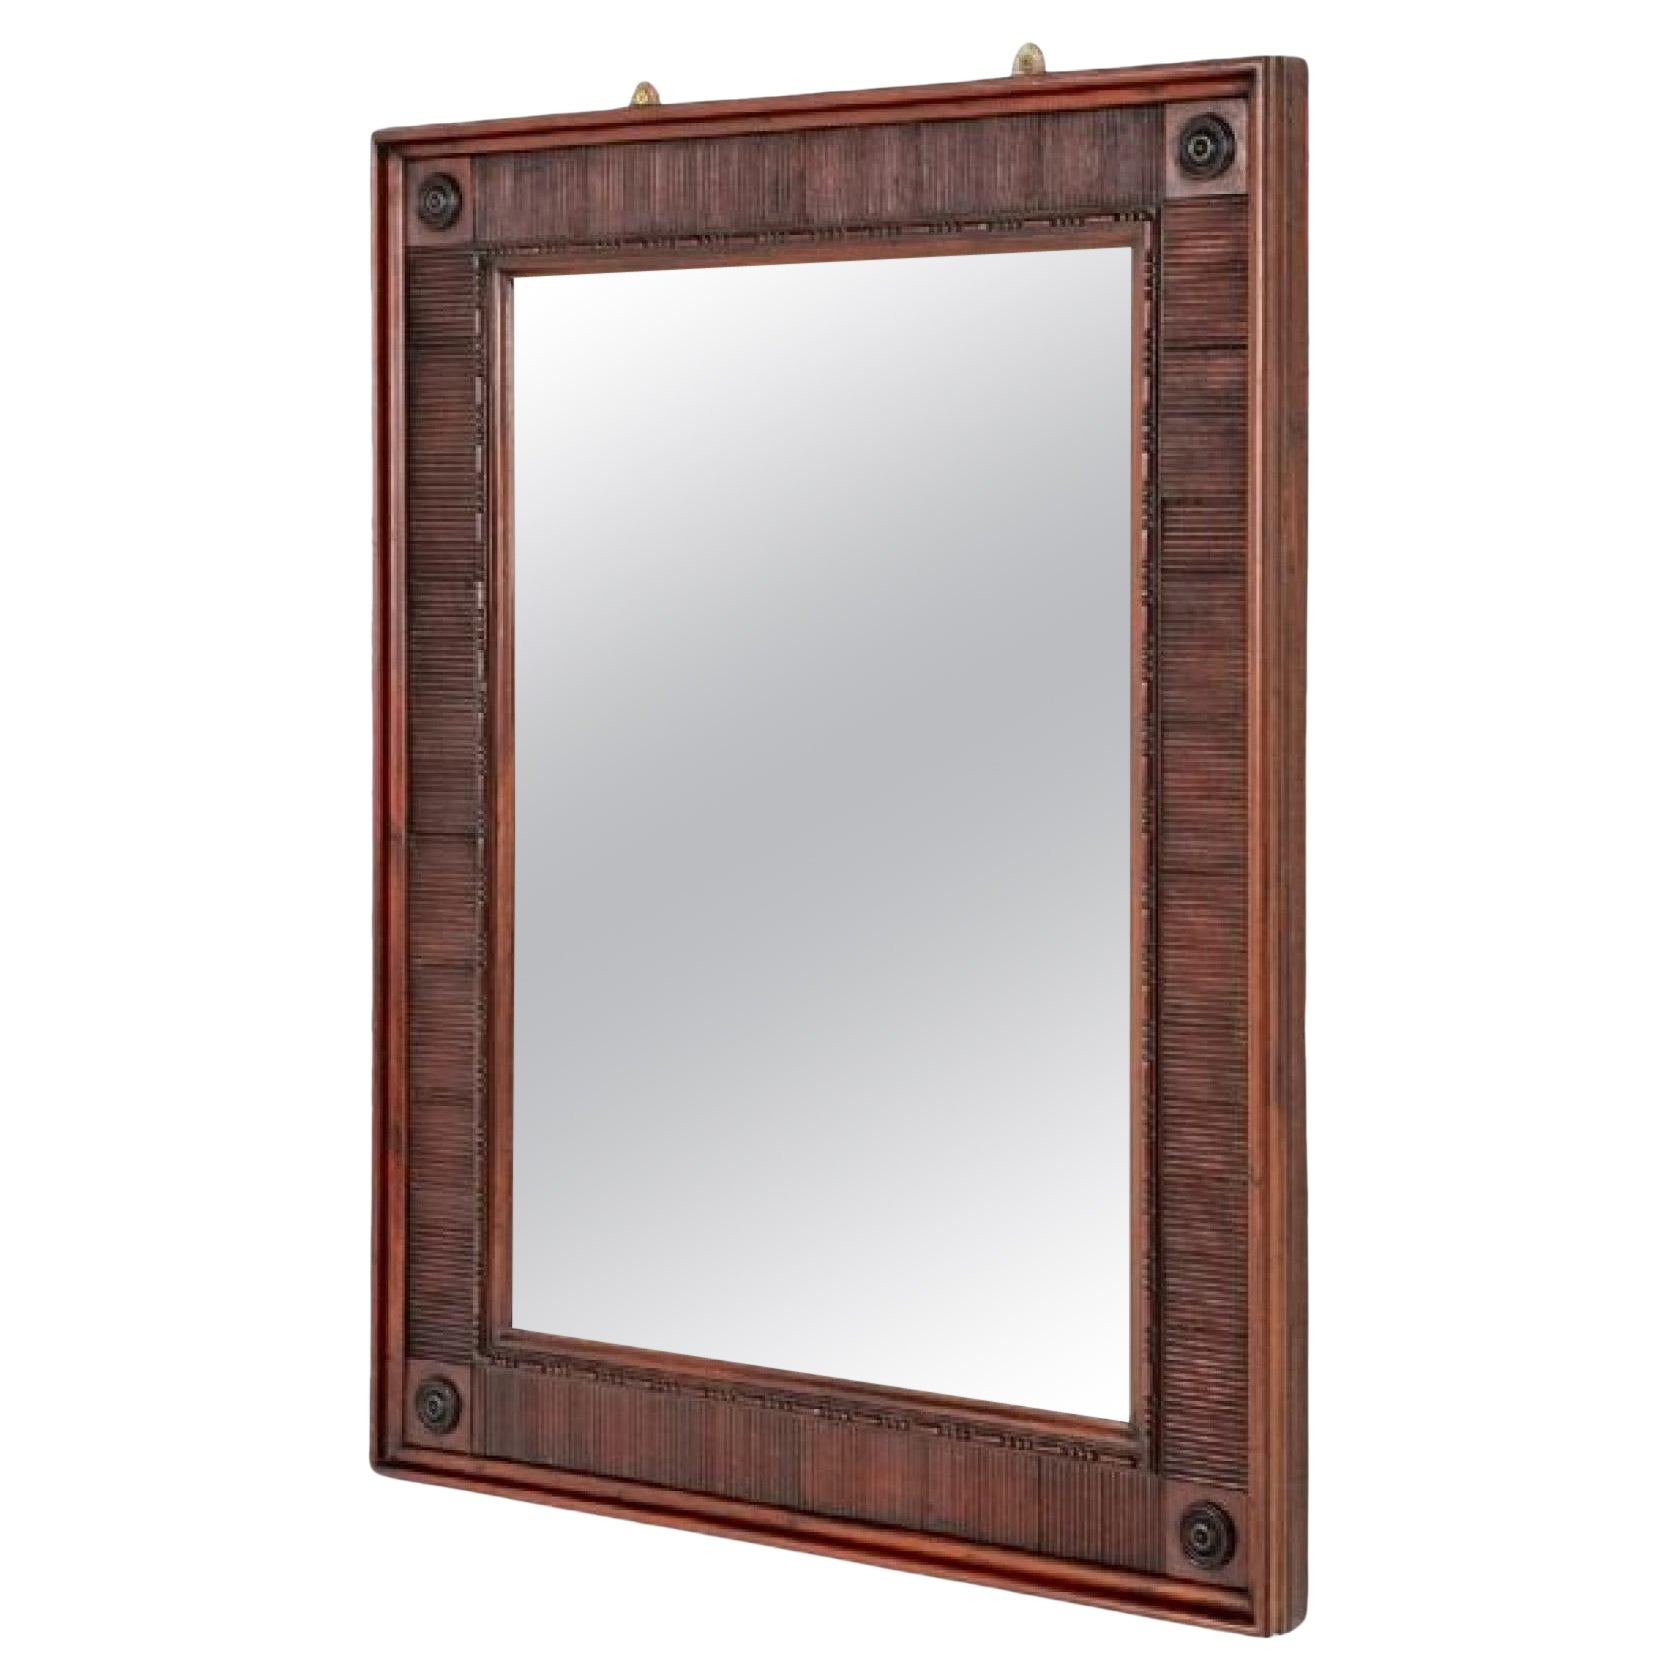 Regency Wall Mirror Wooden Frame